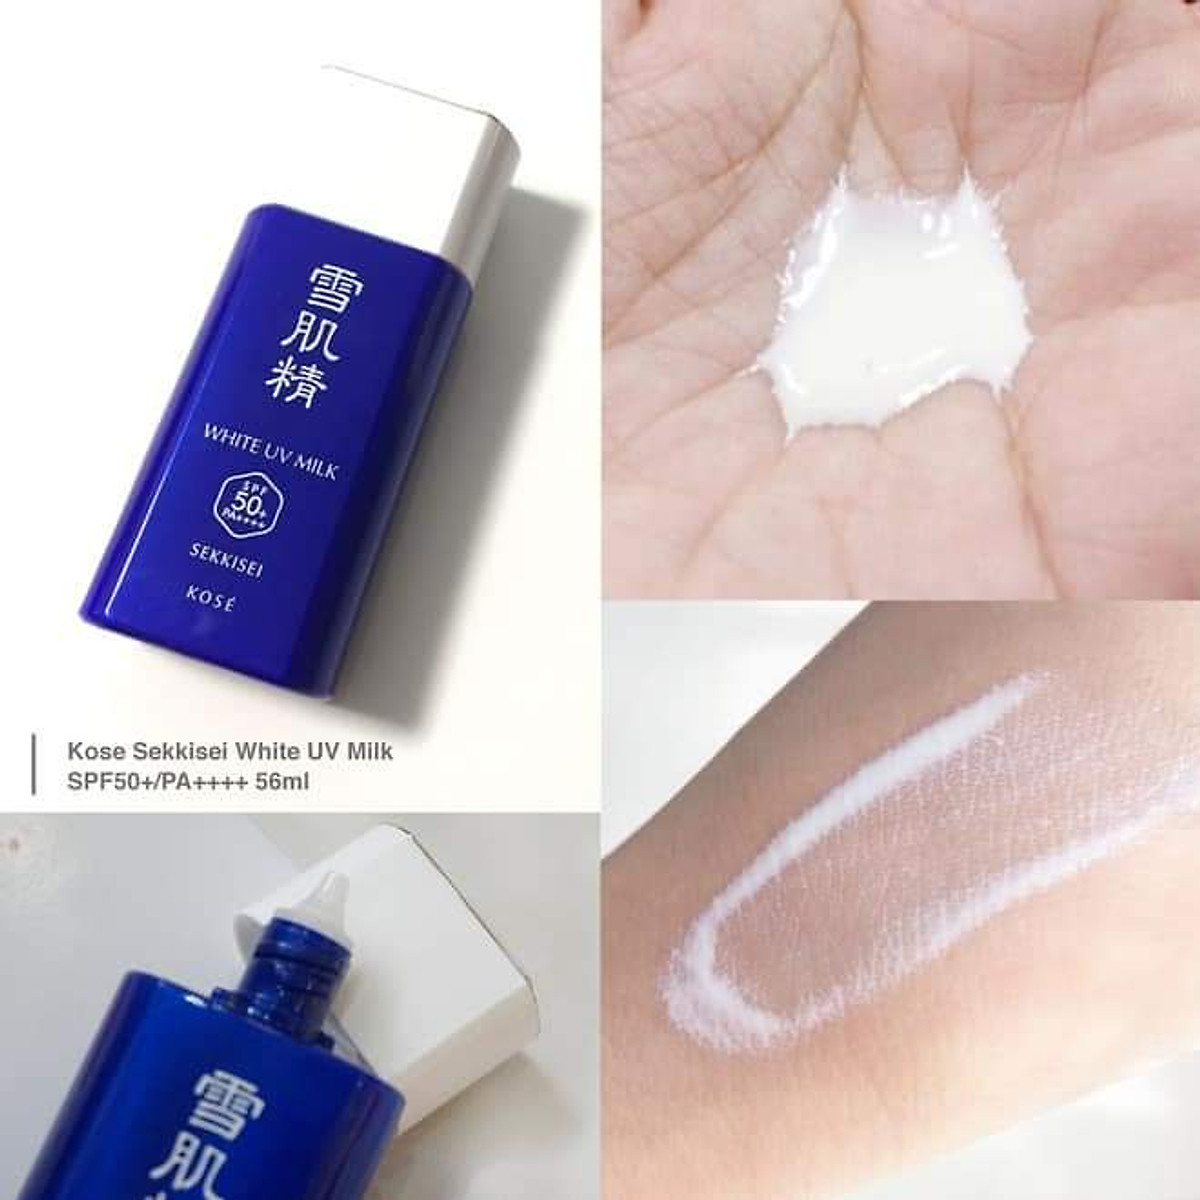 Kem chống nắng Kose Sekkisei White UV Milk SPF 50+ 60g